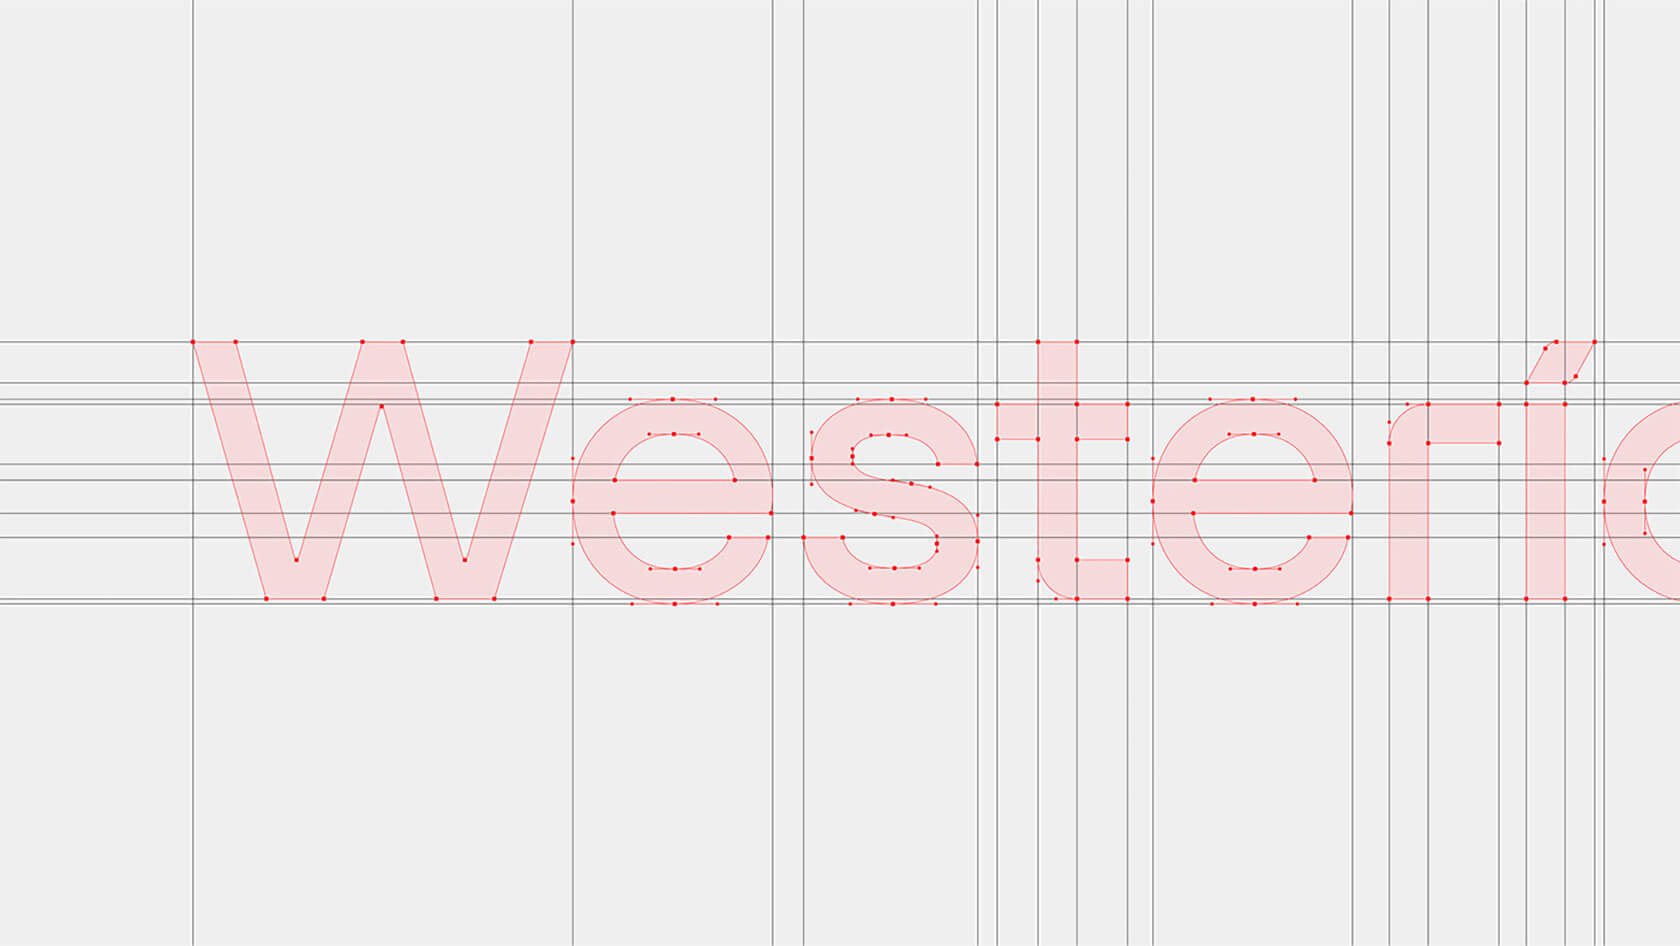 物流公司 Westerico品牌视觉设计